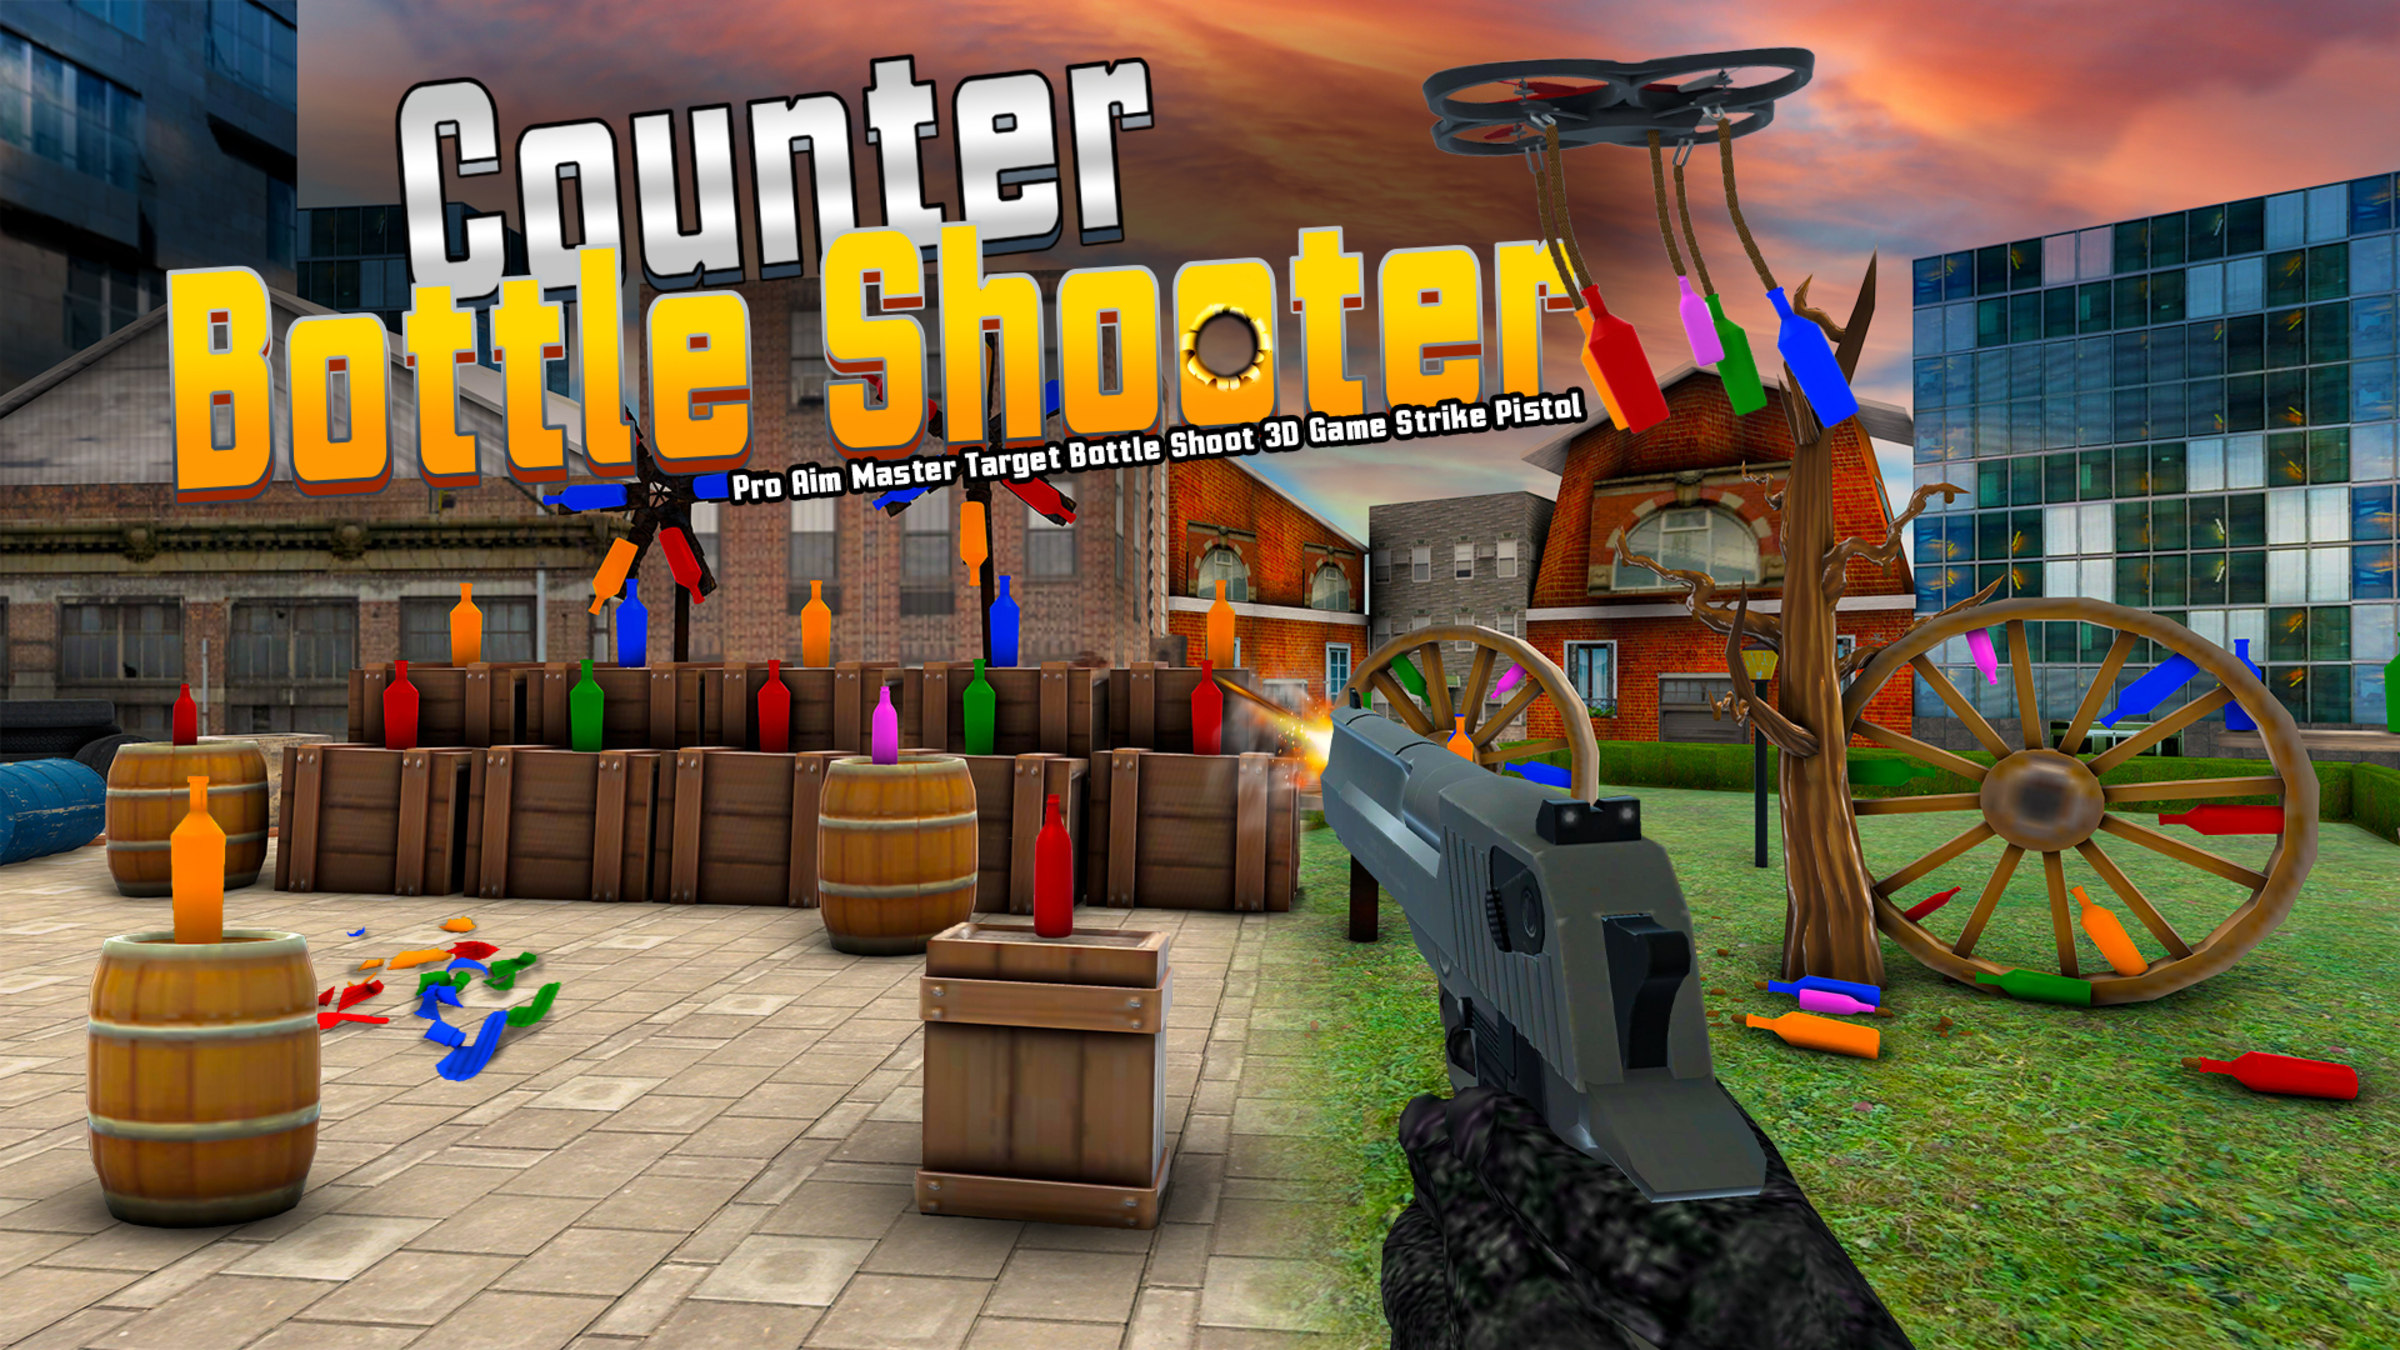 Counter Bottle Shooter-Pro Aim Master Target Bottle Shoot 3D Game Strike Pistol for Nintendo Switch